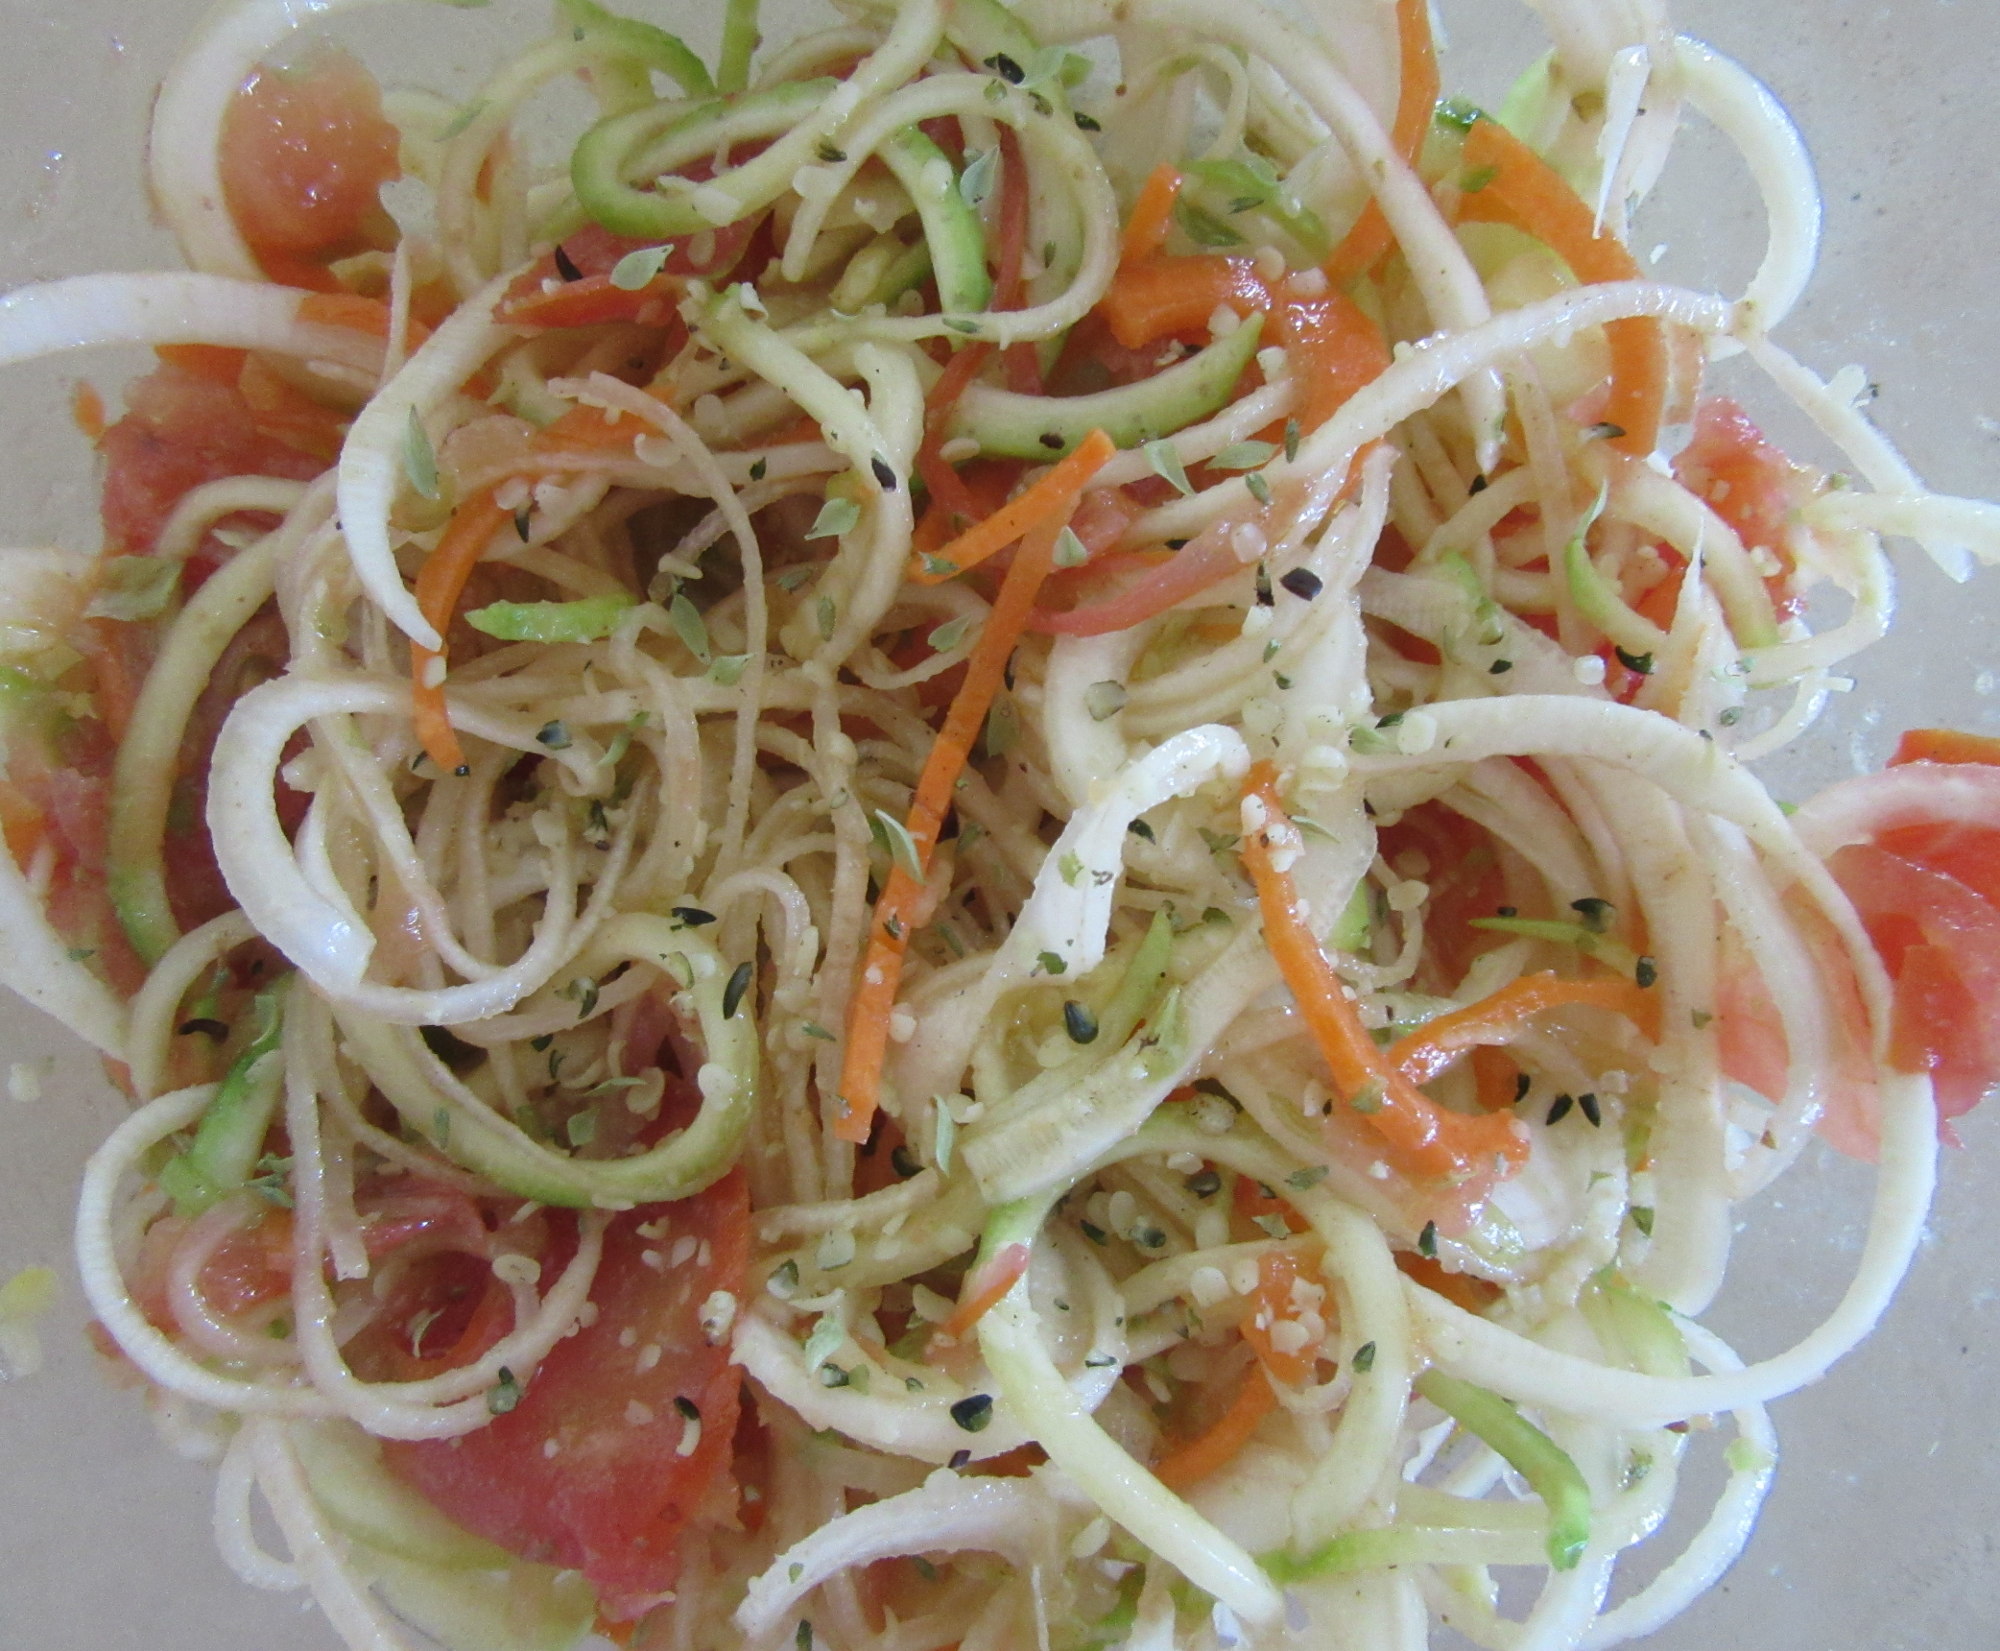 Salad with spiral vegetables.